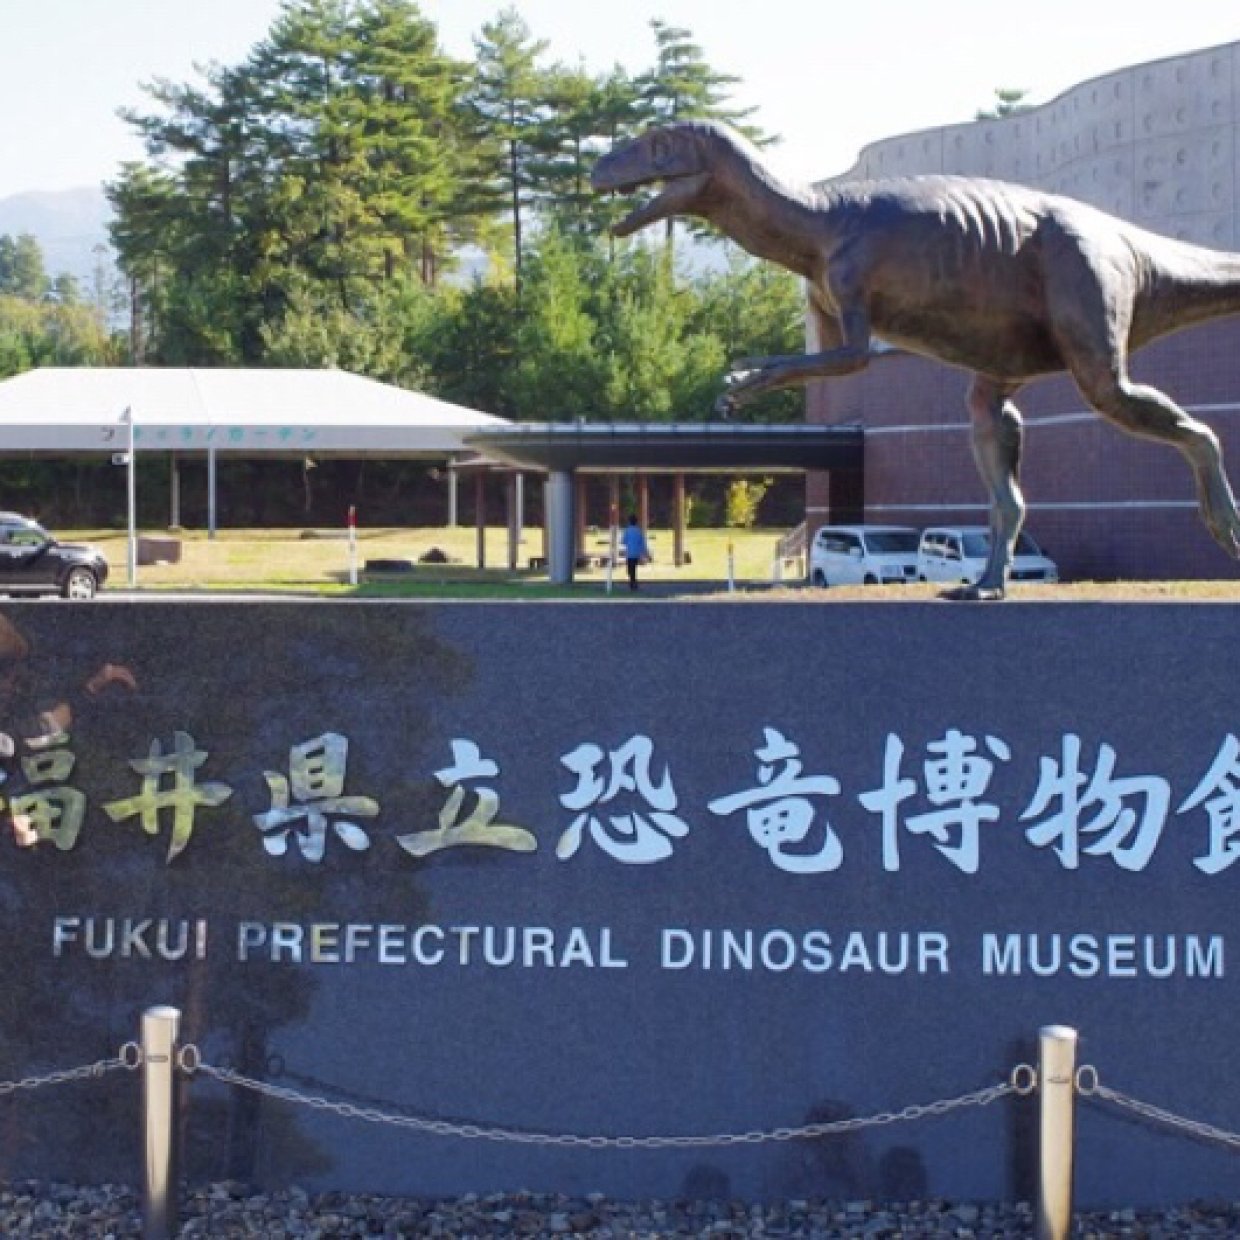  世界三大恐竜博物館の「福井県立恐竜博物館」に行ったらとんでもないことになってた 